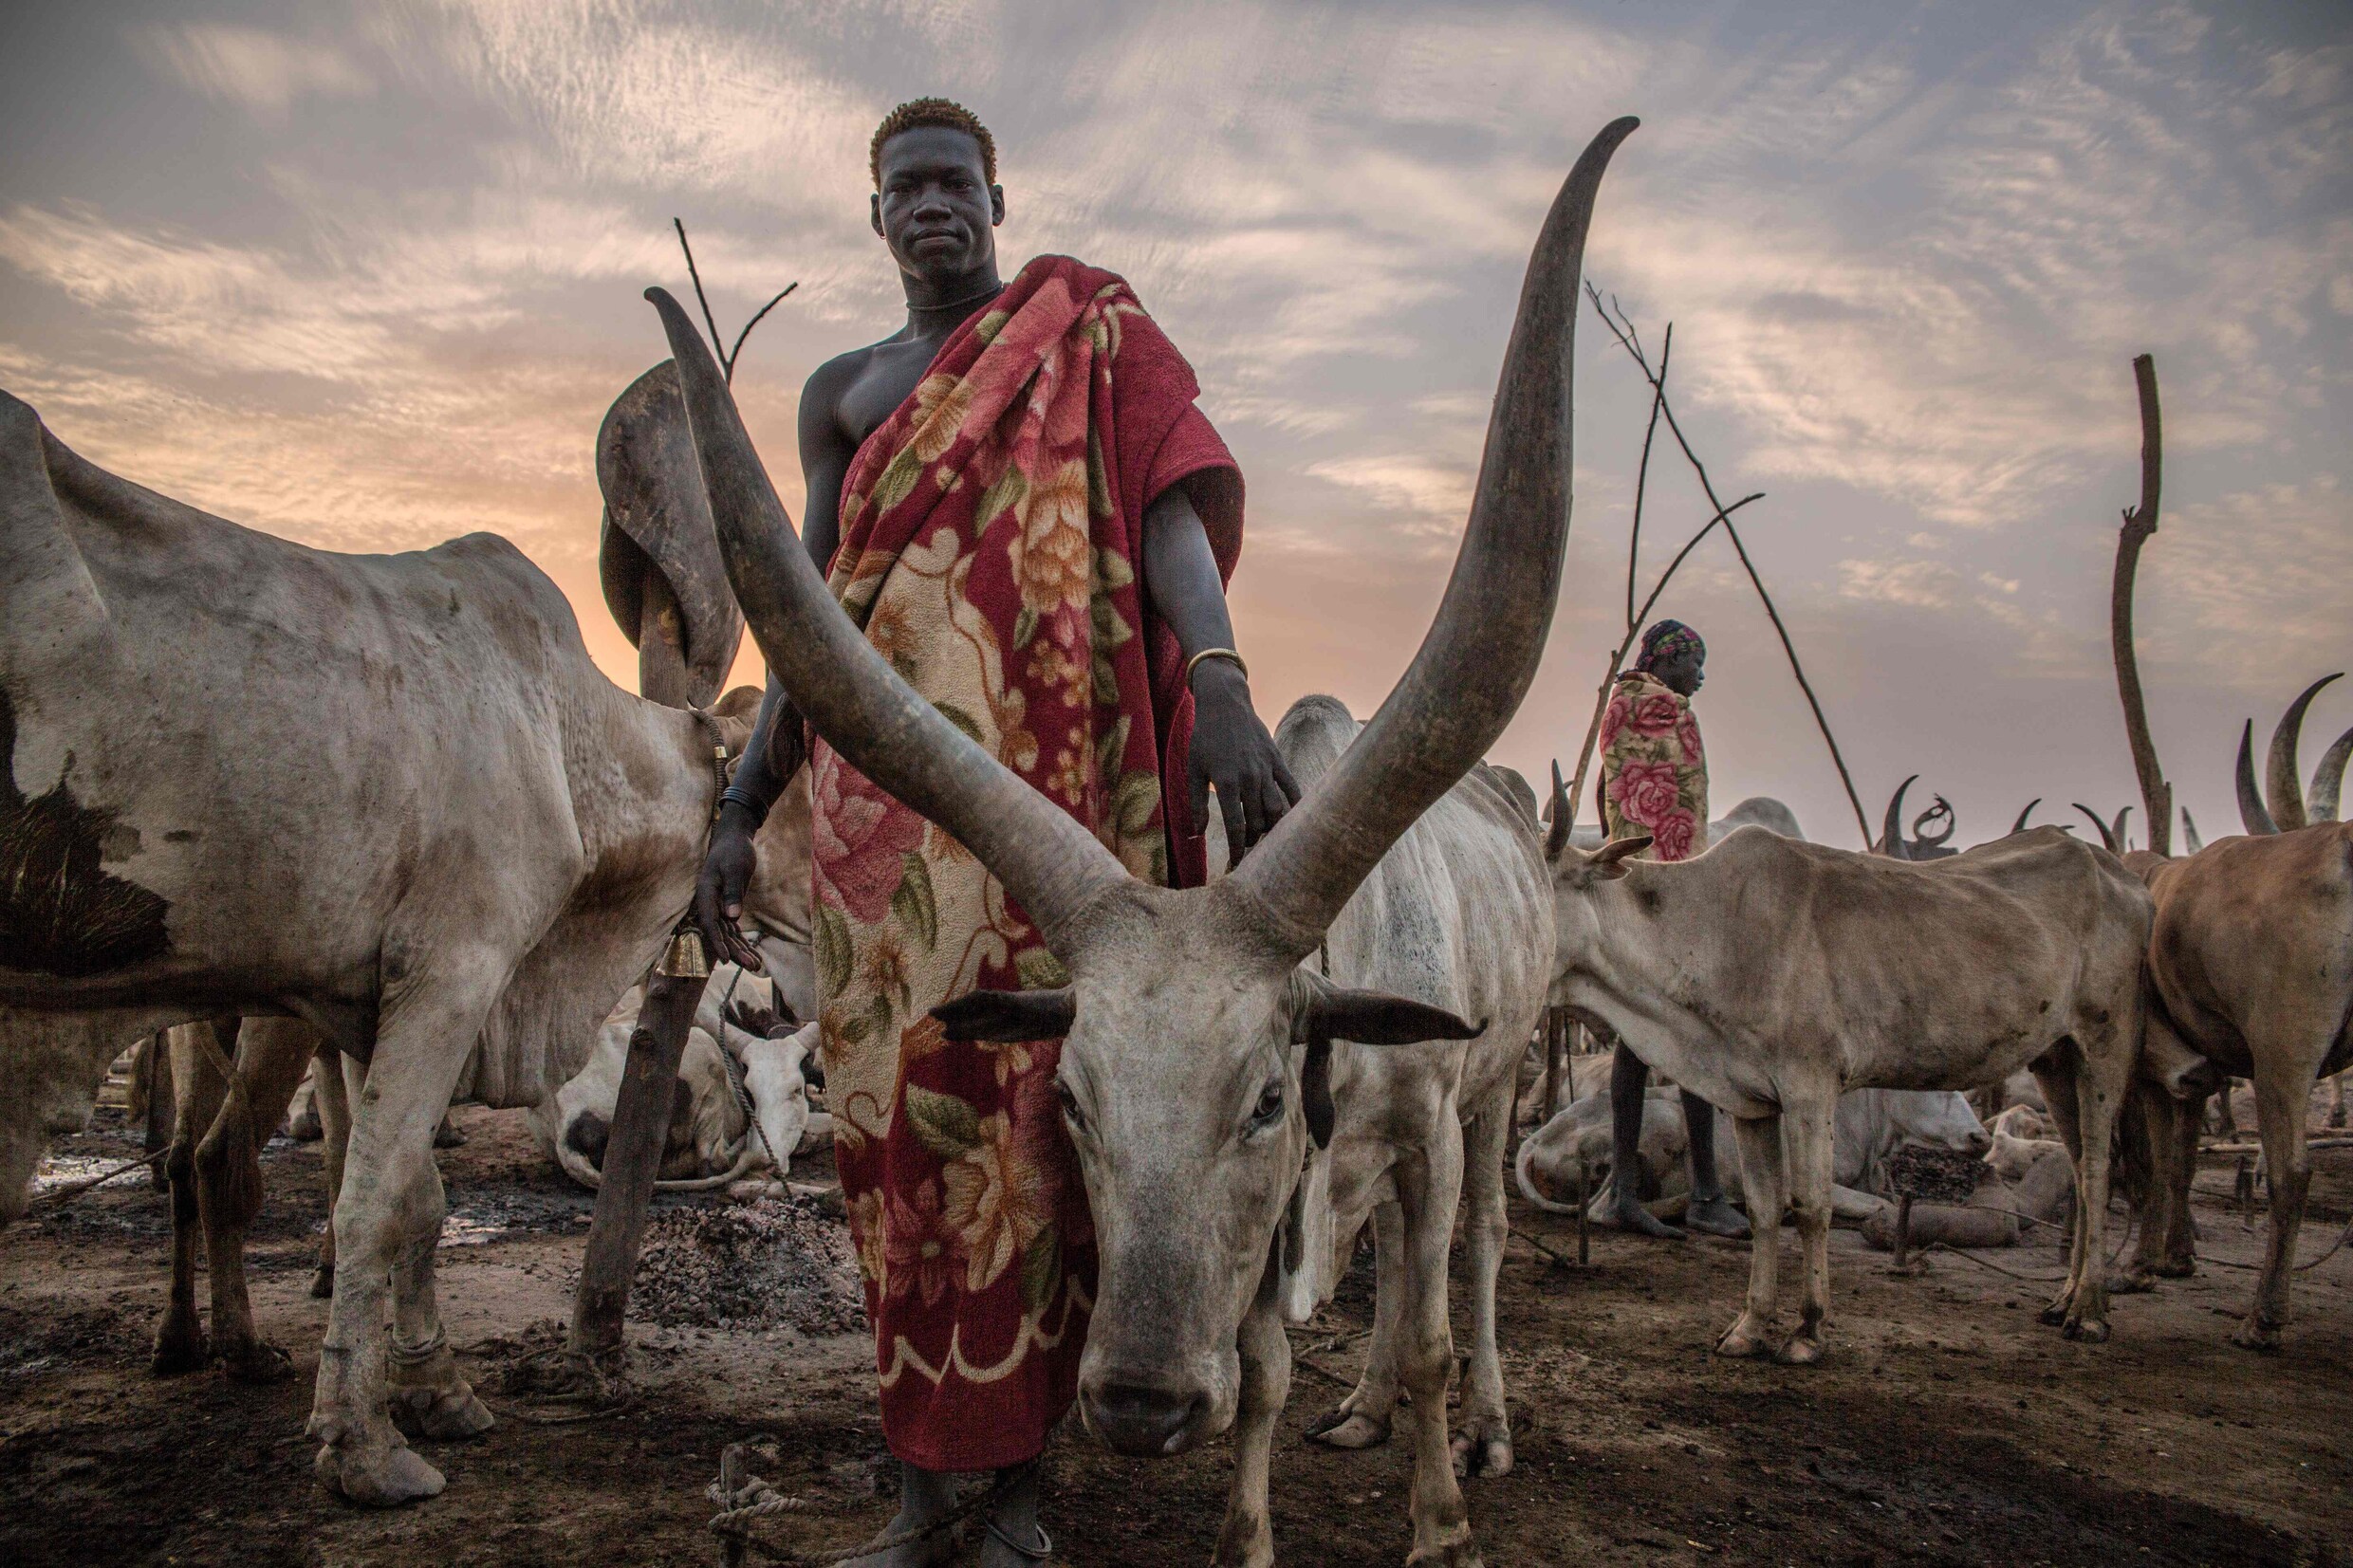 Eeuwenoude tradities houden Sudanese nomaden tegen om voedselprobleem in Afrika op te lossen